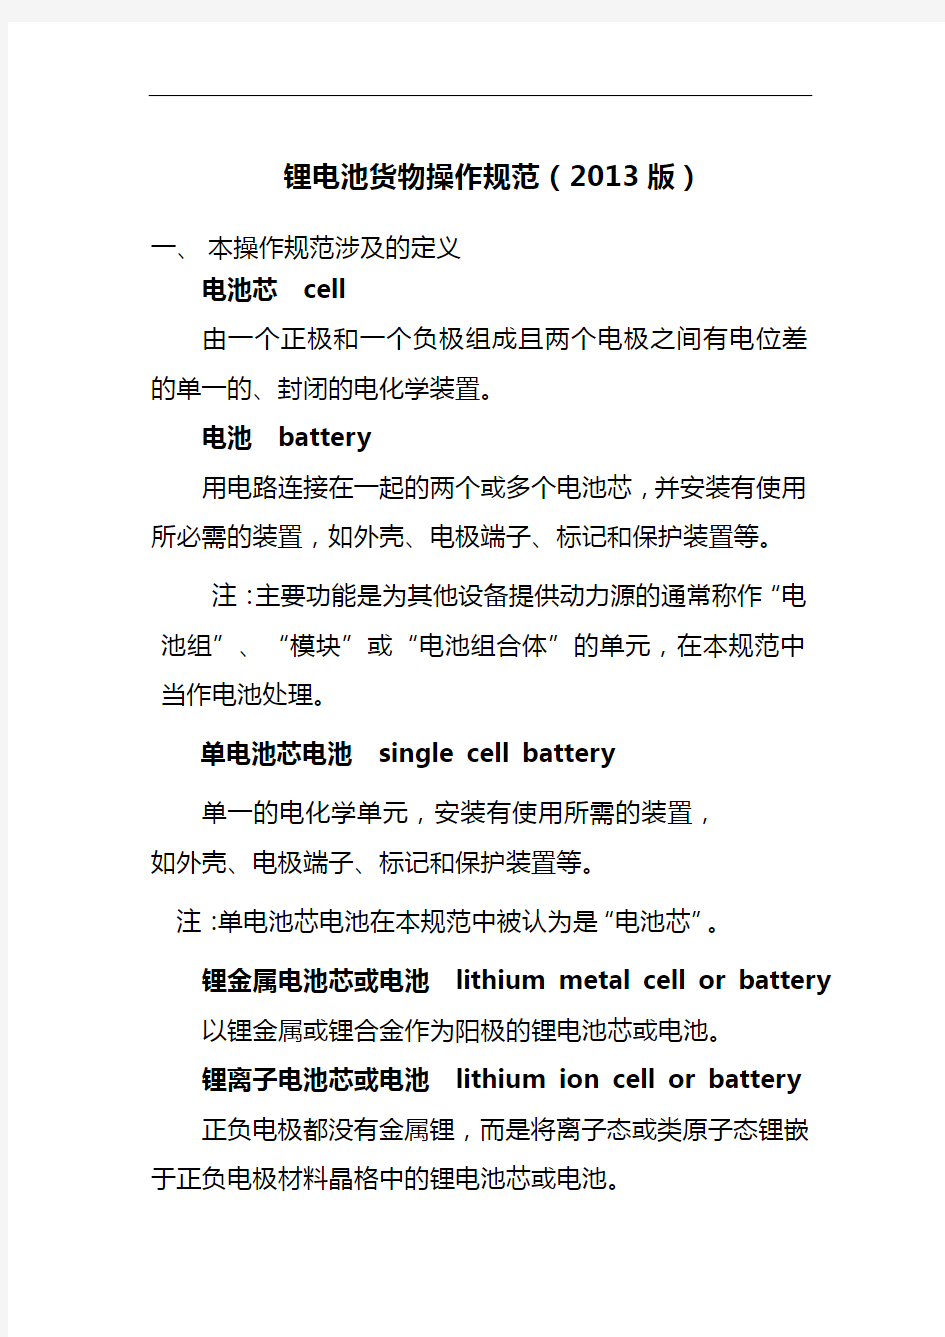 锂电池货物操作规范-2013讲解